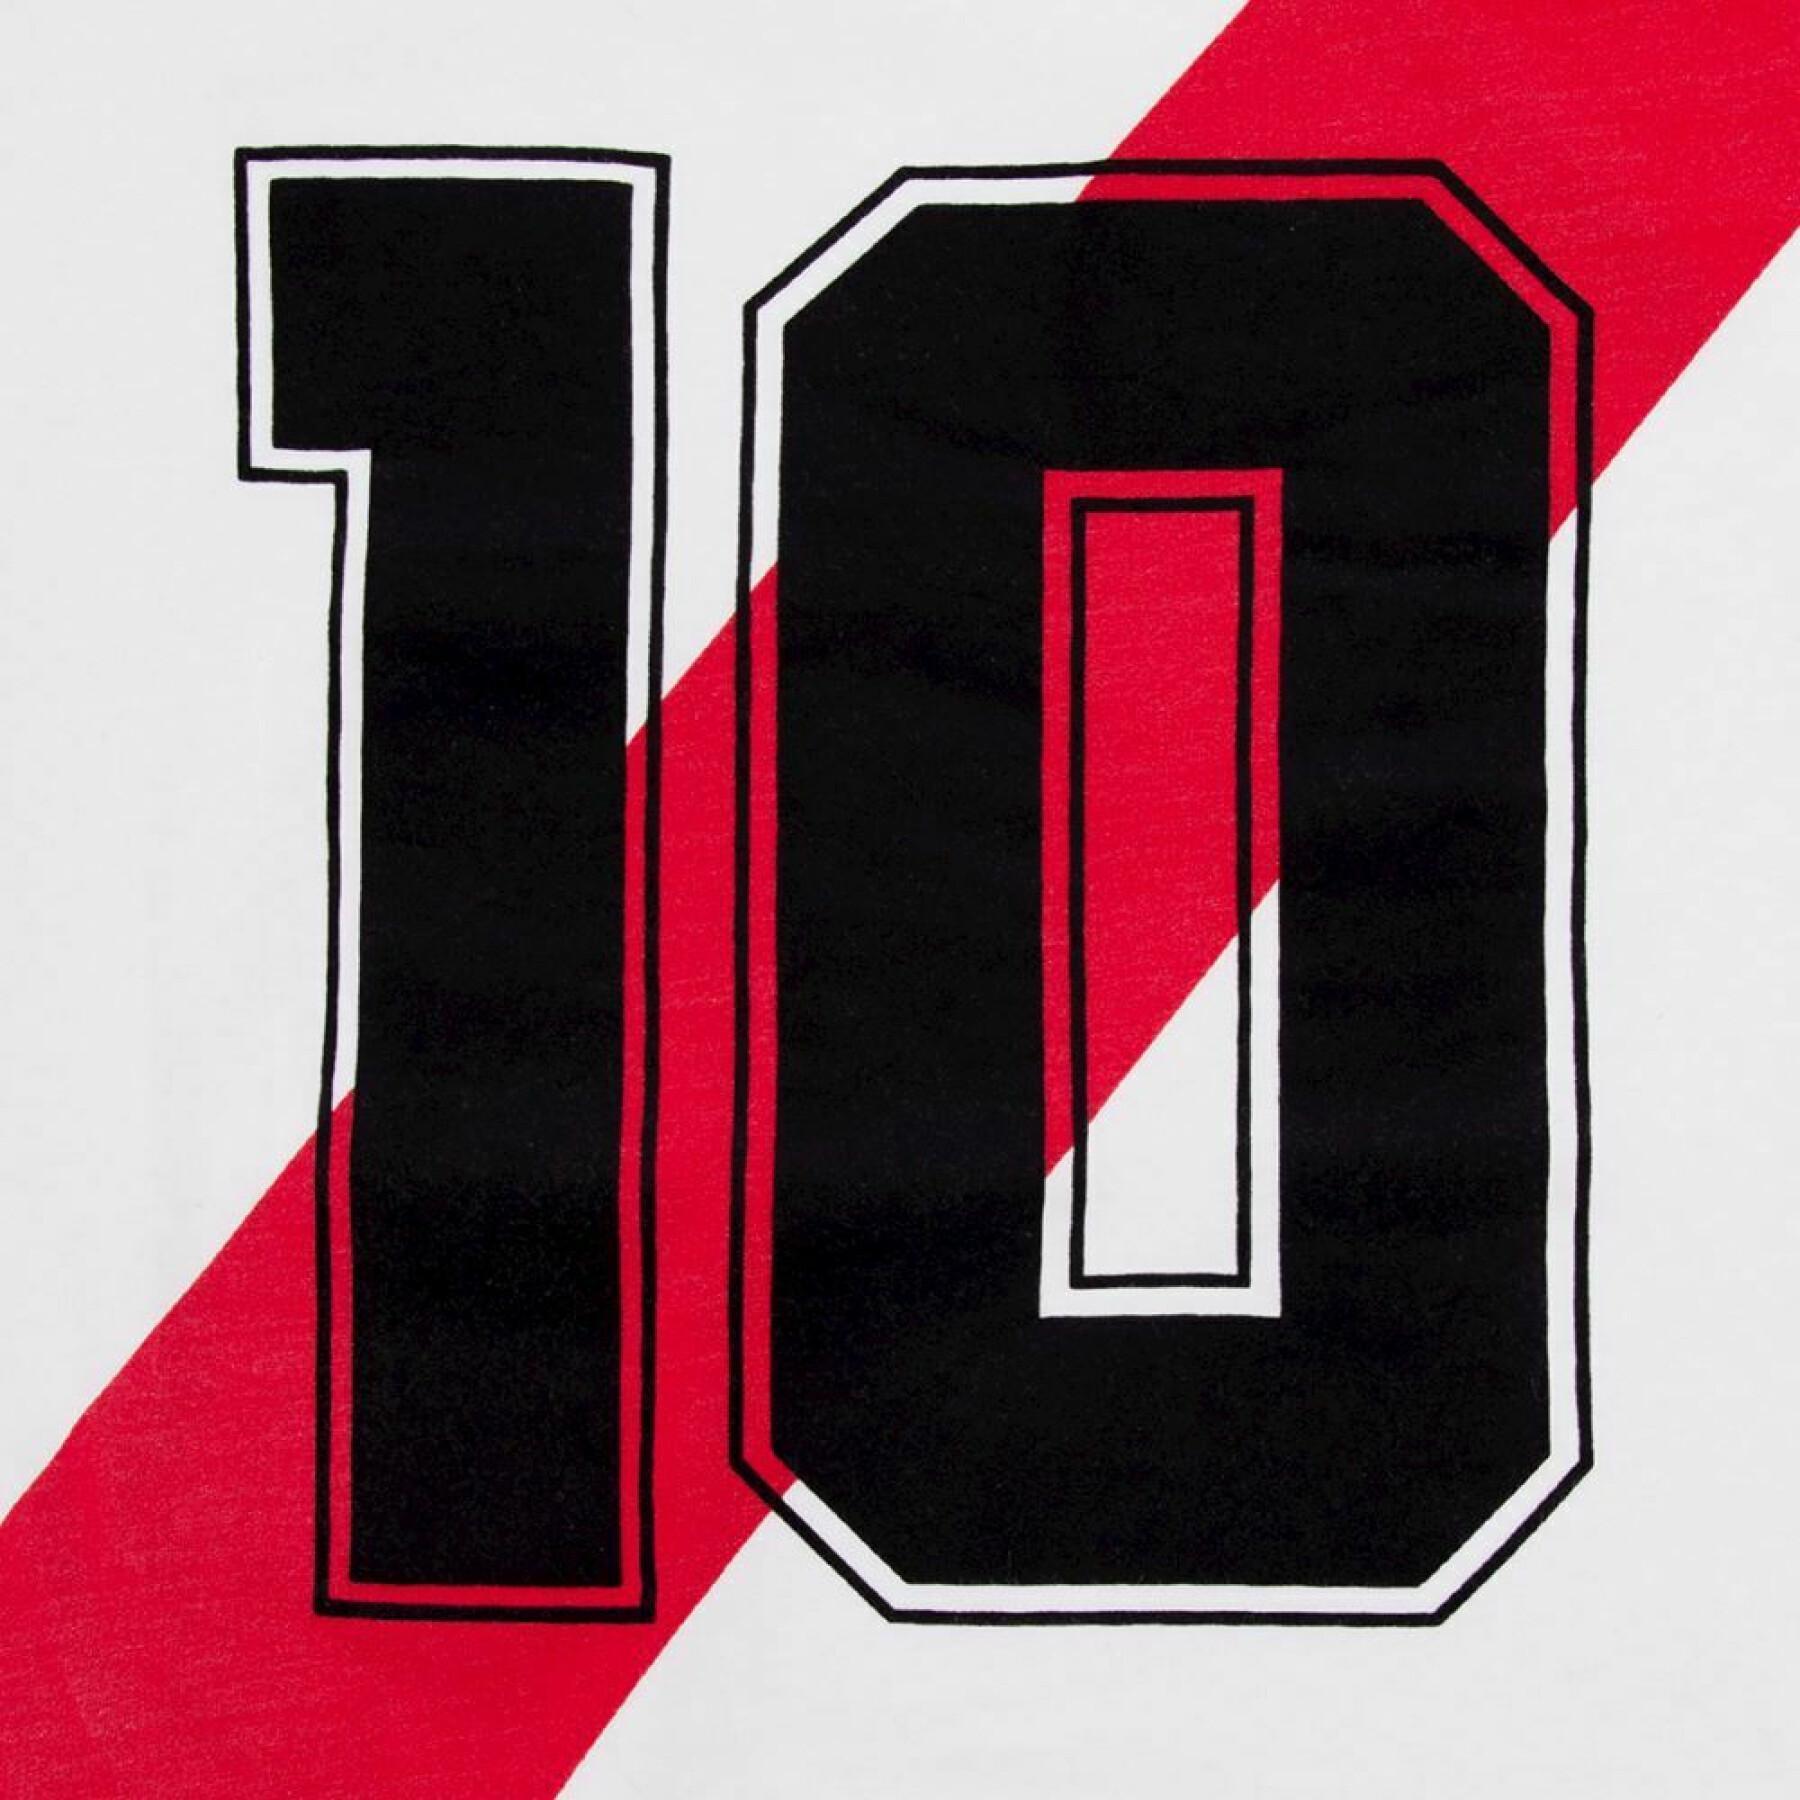 T-shirt nummer 10 River Plate